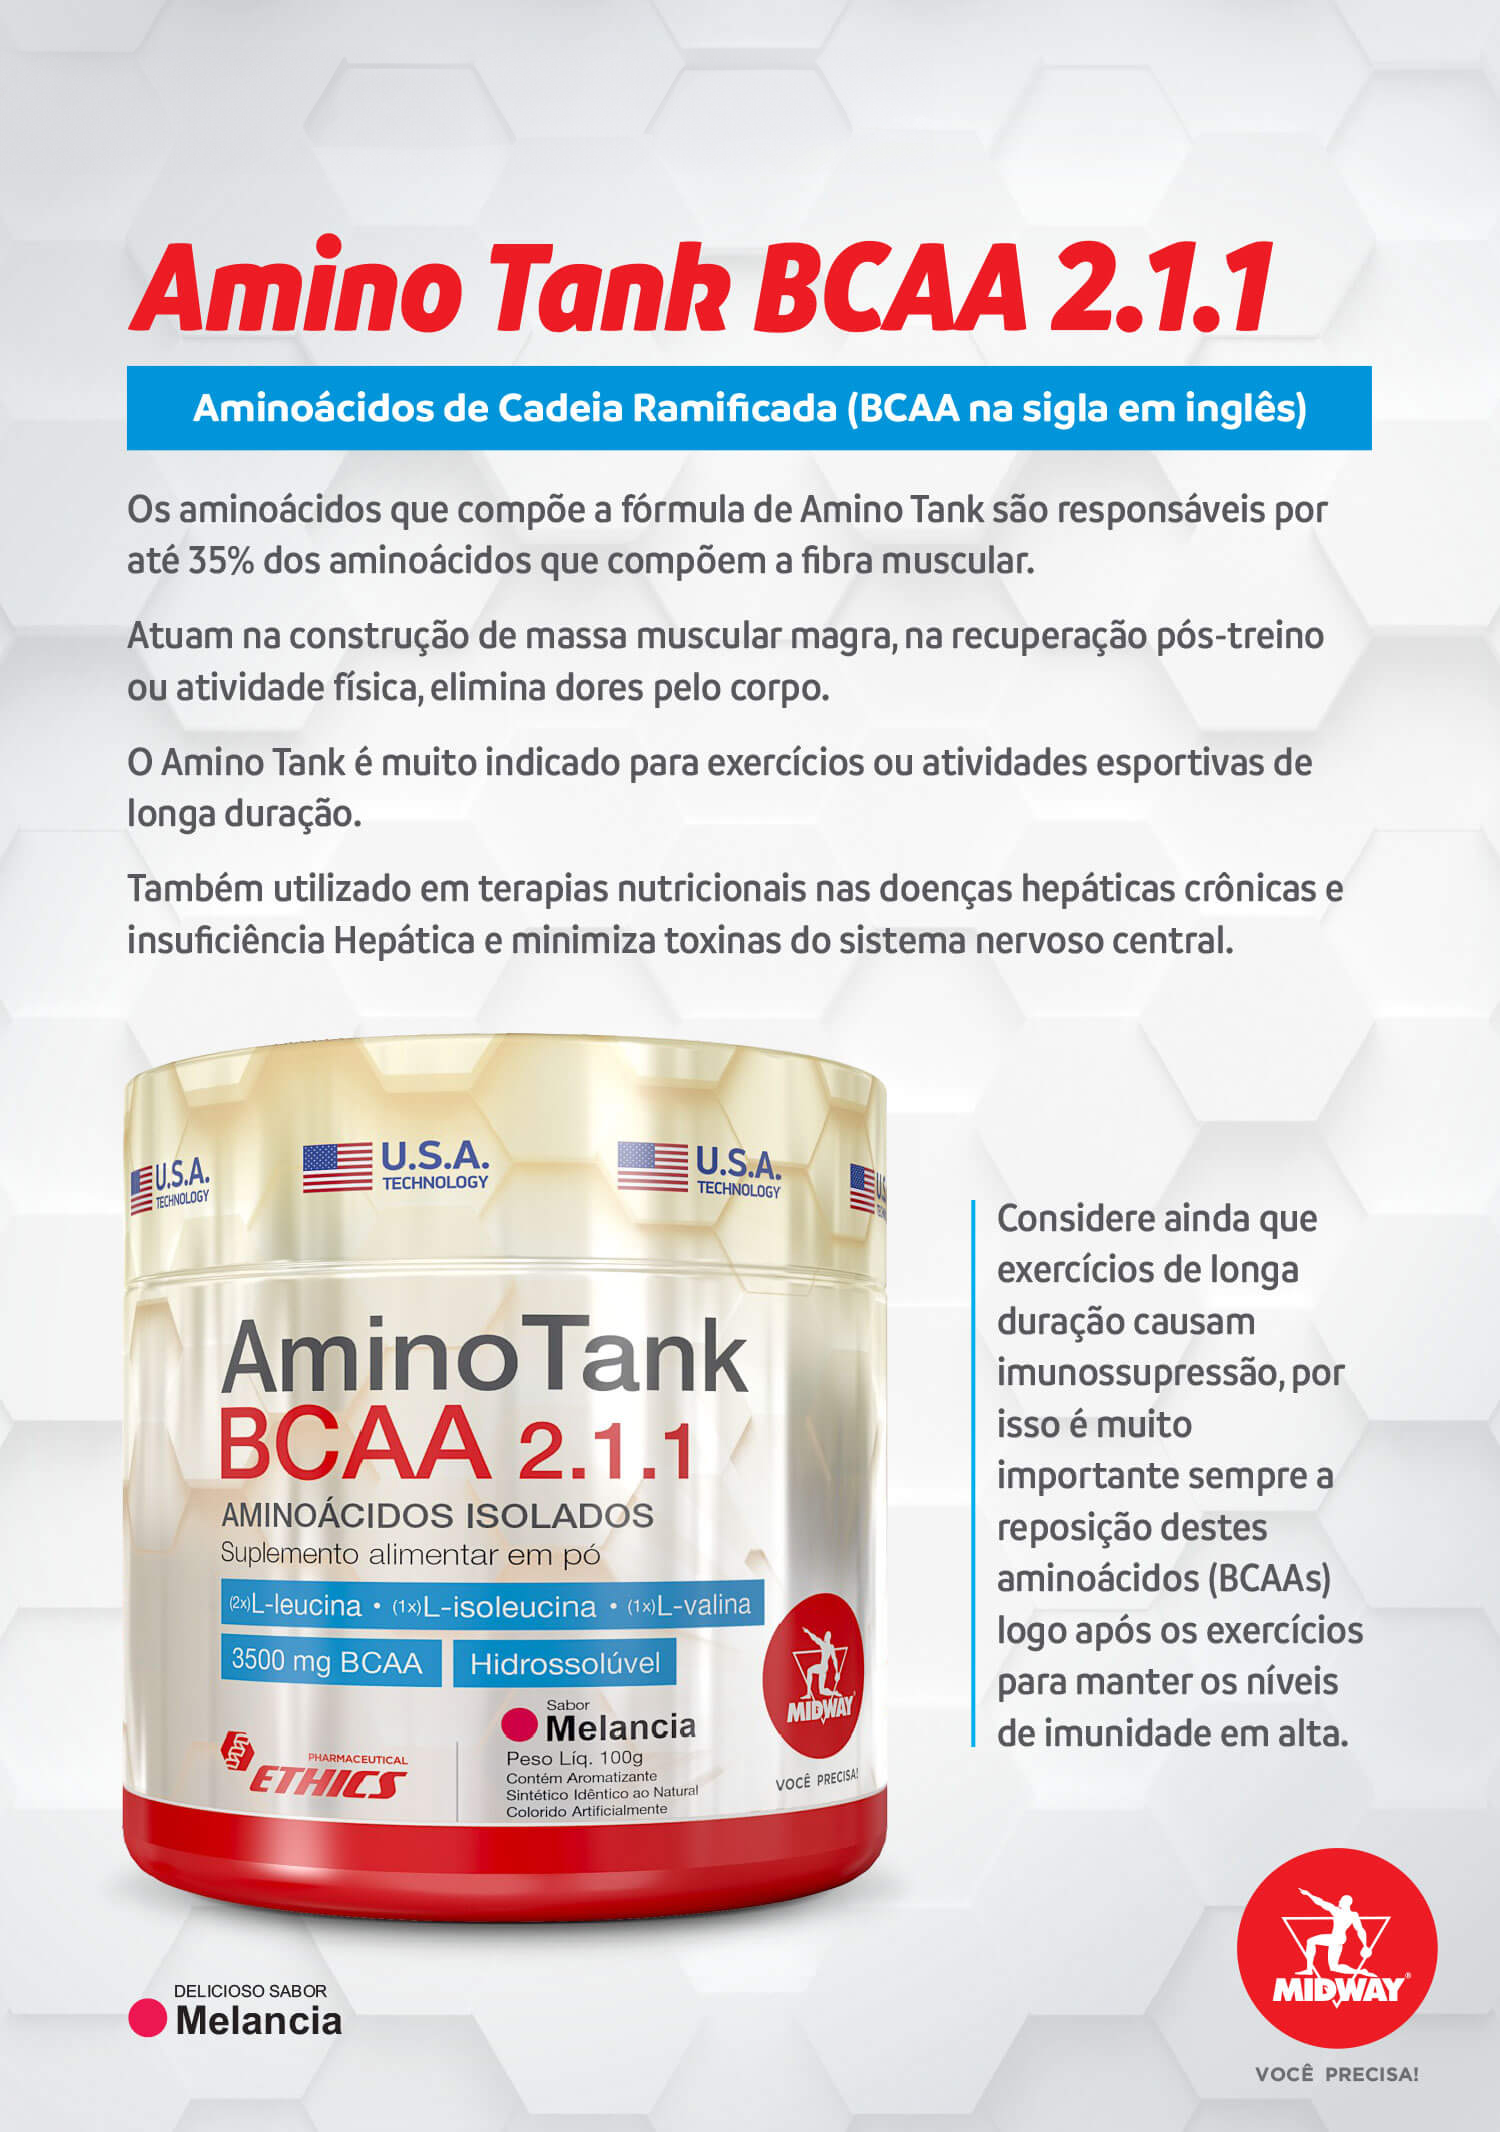 Amino Tank BCAA 2.1.1